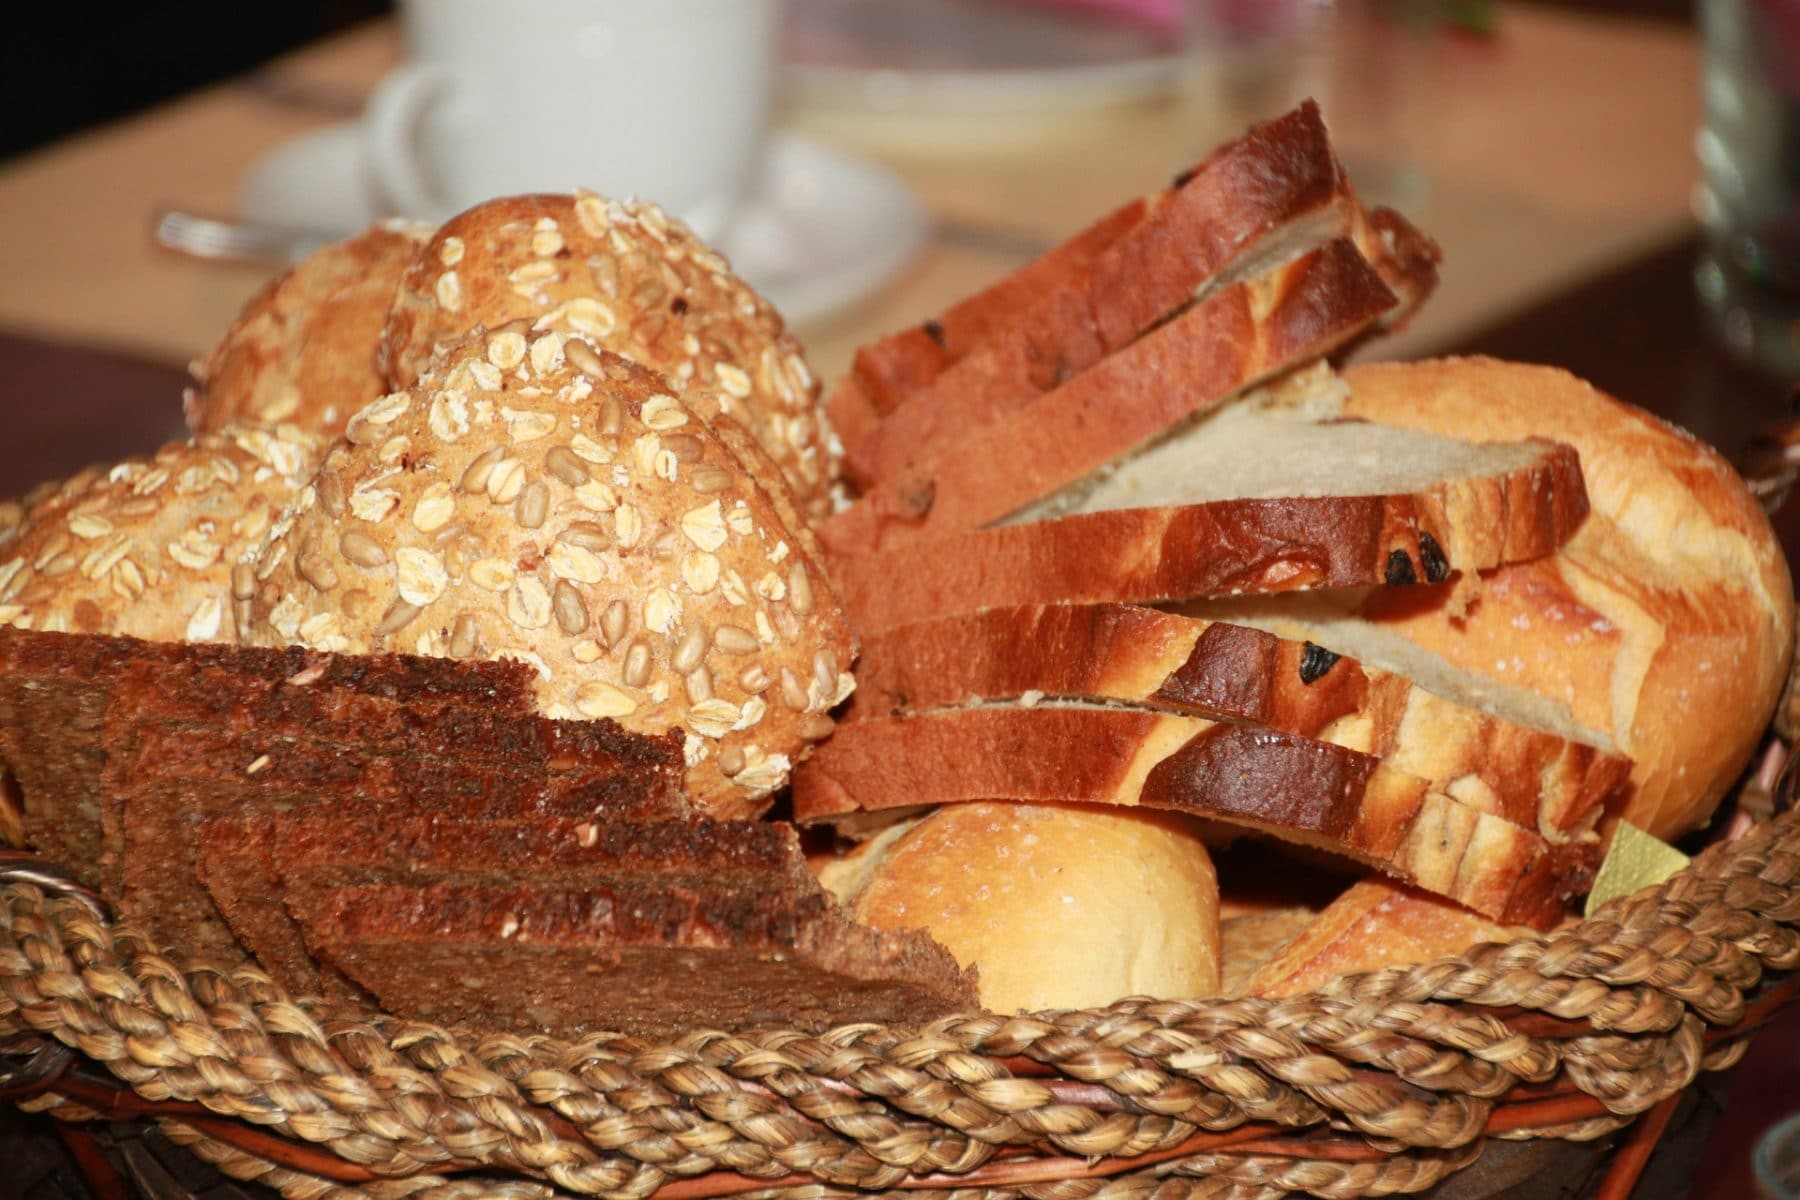 Ein Korb voller geschnittenem Brot und Brötchen